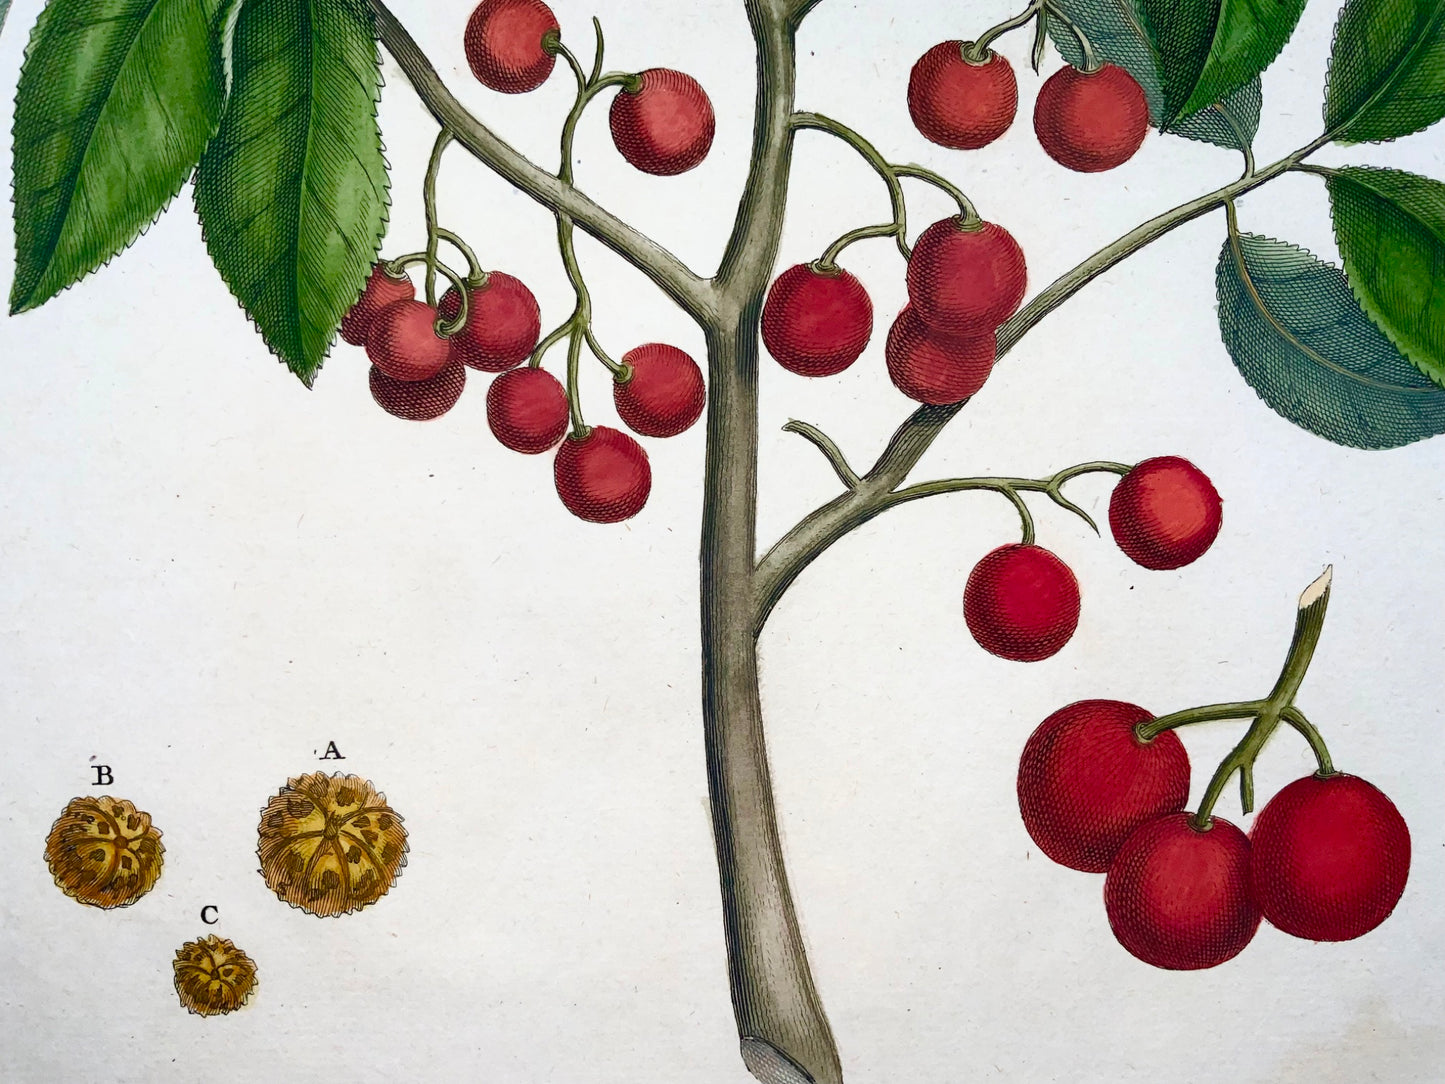 1741 Utrasum bean tree, Rumpf, Herbarium Amboinense, Indonesia, hand color folio